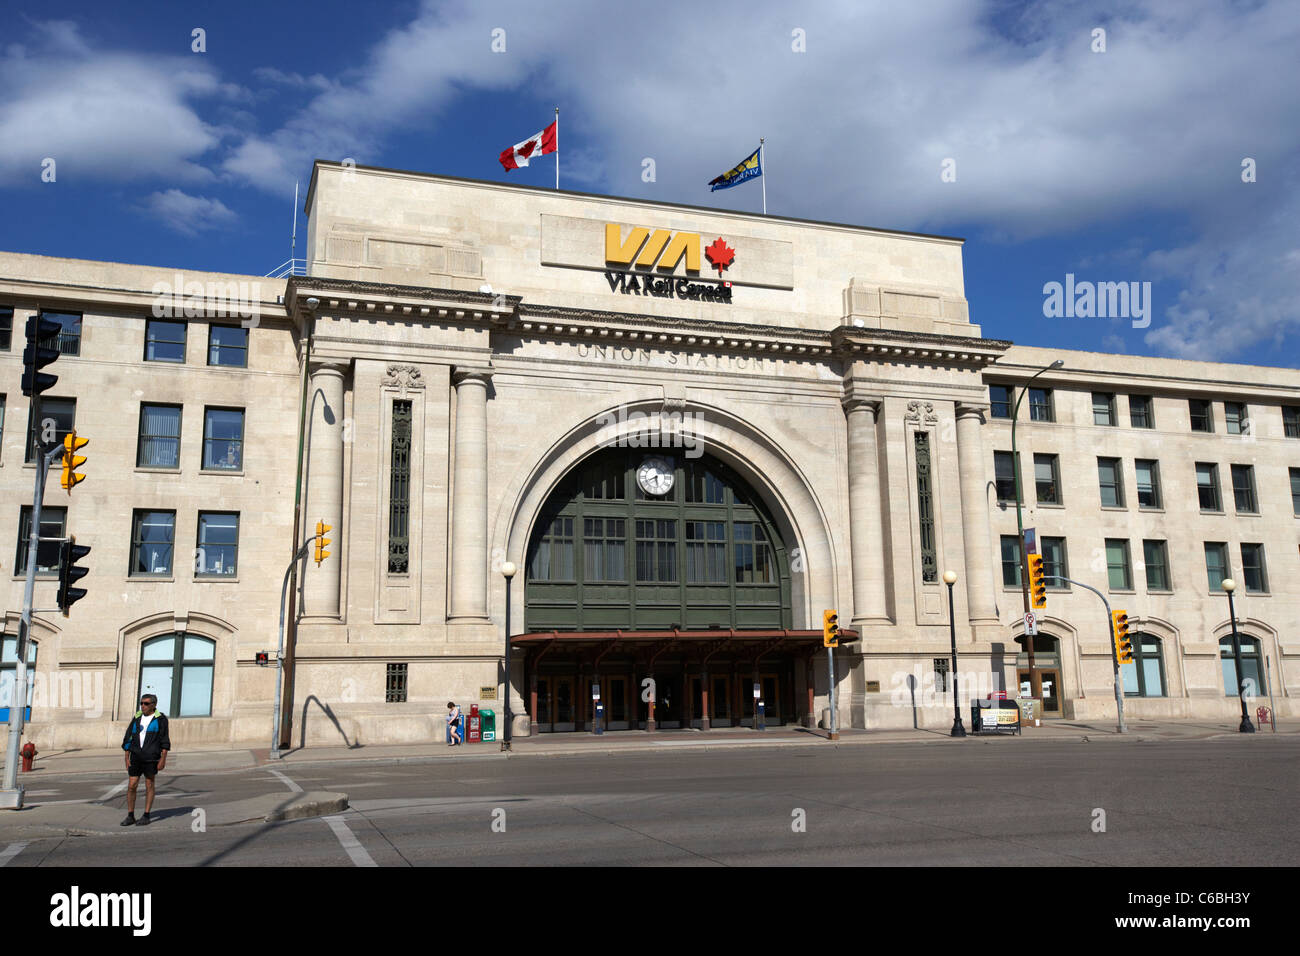 La Union Station via rail canada downtown Winnipeg Manitoba Canada Foto Stock